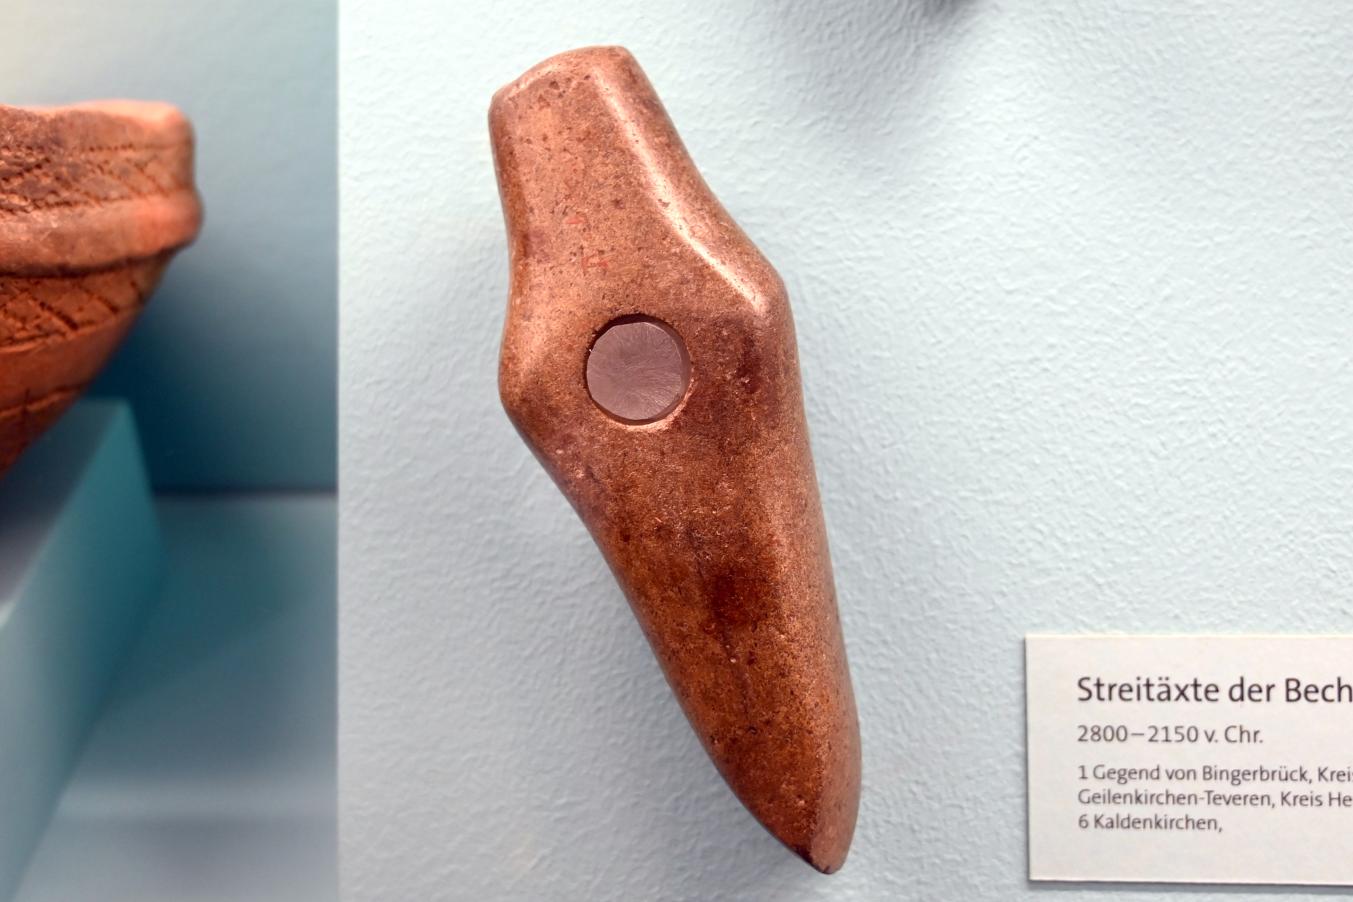 Streitaxt, Endneolithikum, 2800 - 1700 v. Chr., 2800 - 2150 v. Chr.